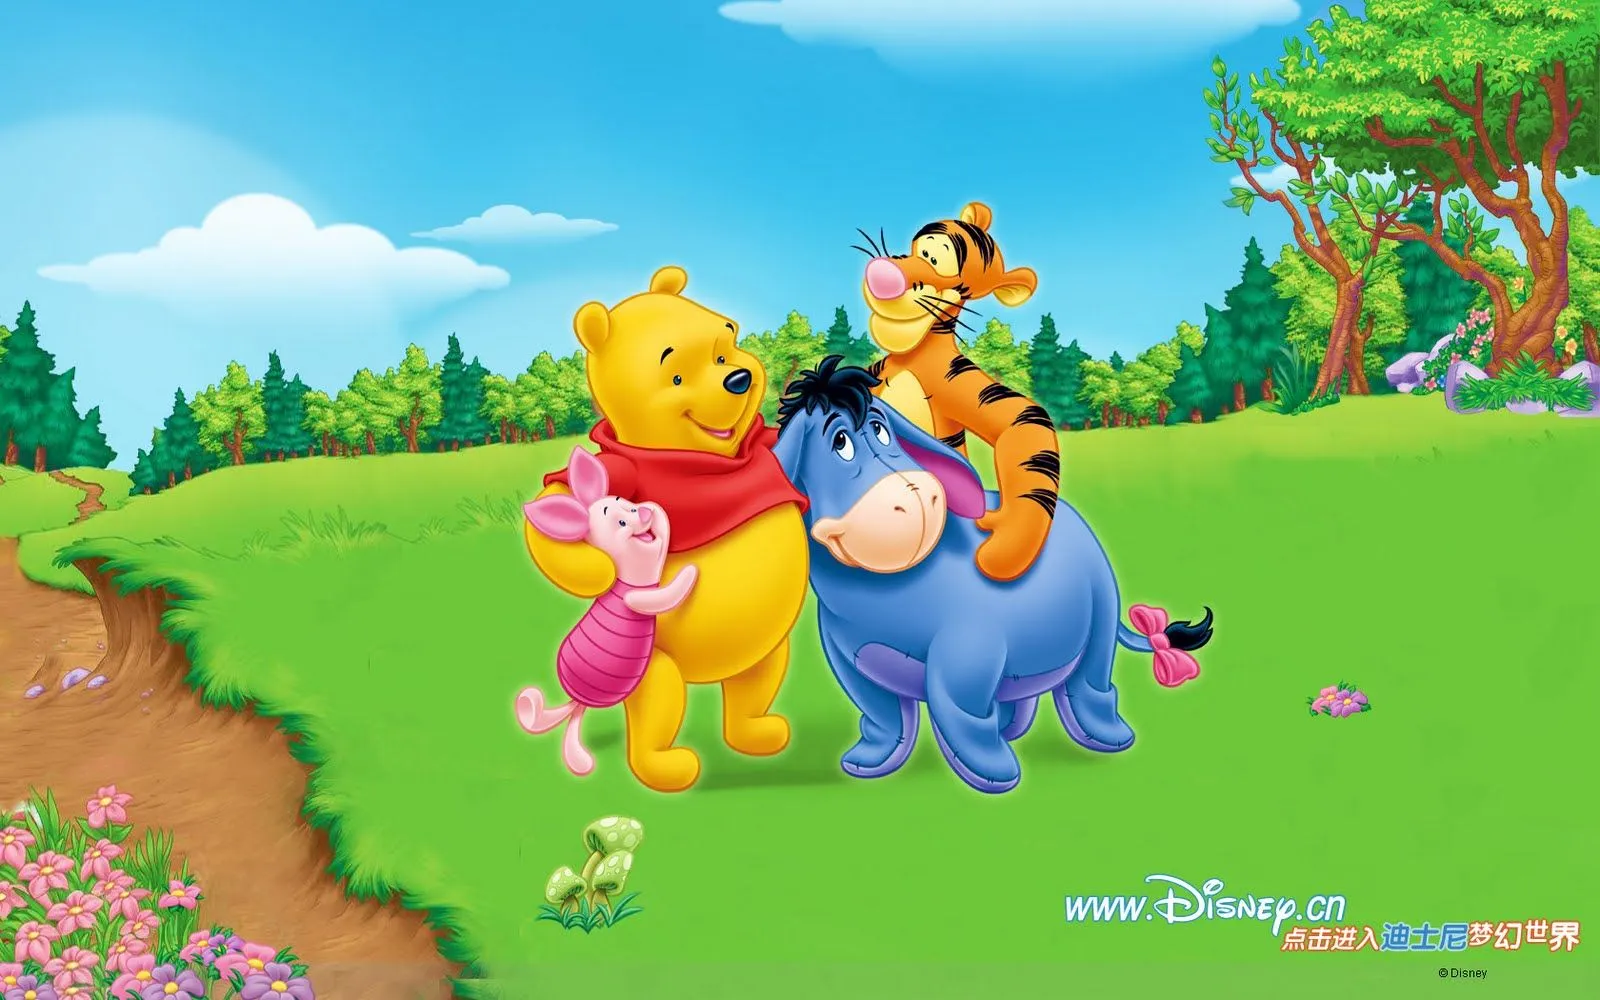 Banco de Imágenes Gratis: Wallpapers de Winnie Pooh by Disney I (8 ...